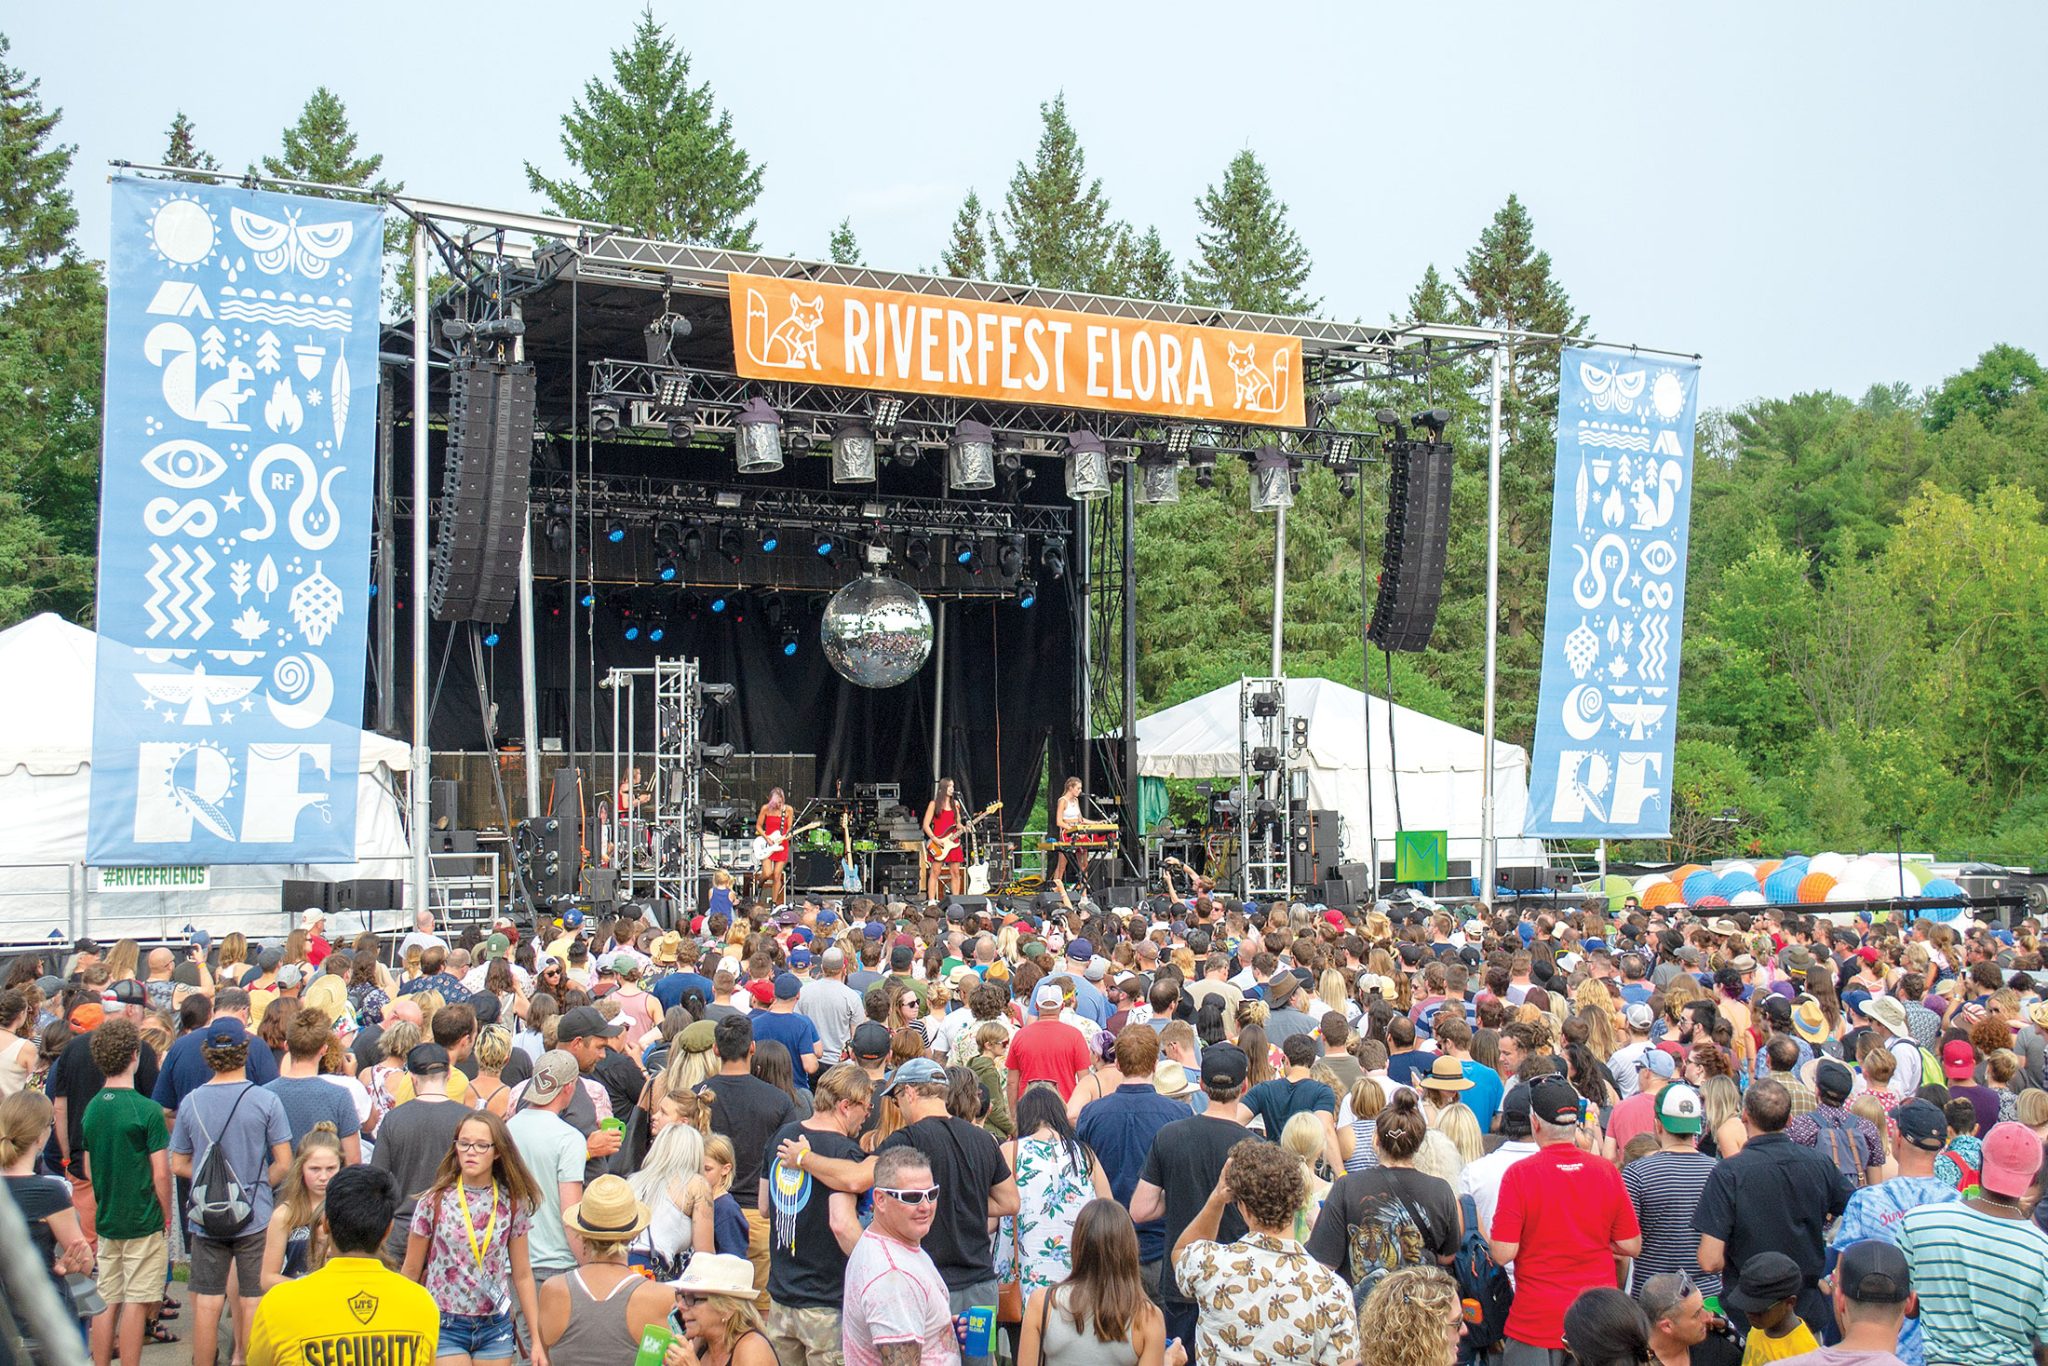 Riverfest Elora announces lineup for 2022 festival